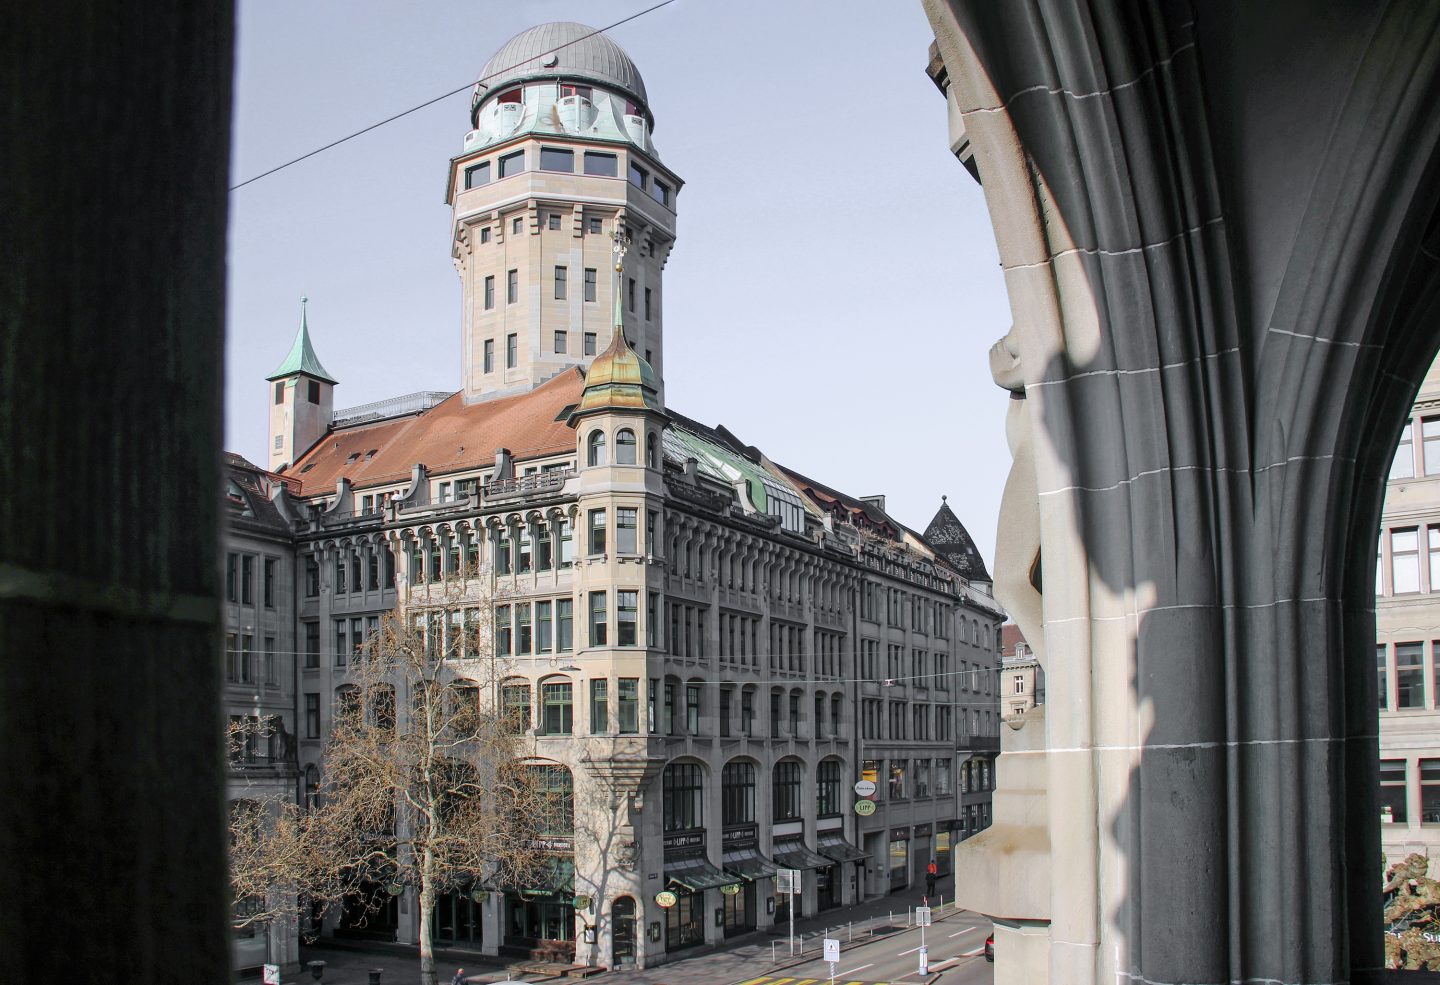 Urania Sternwarte, Zürich, ZH. Hildebrand Studios AG, Büro für Architektur und Städtebau, Zürich